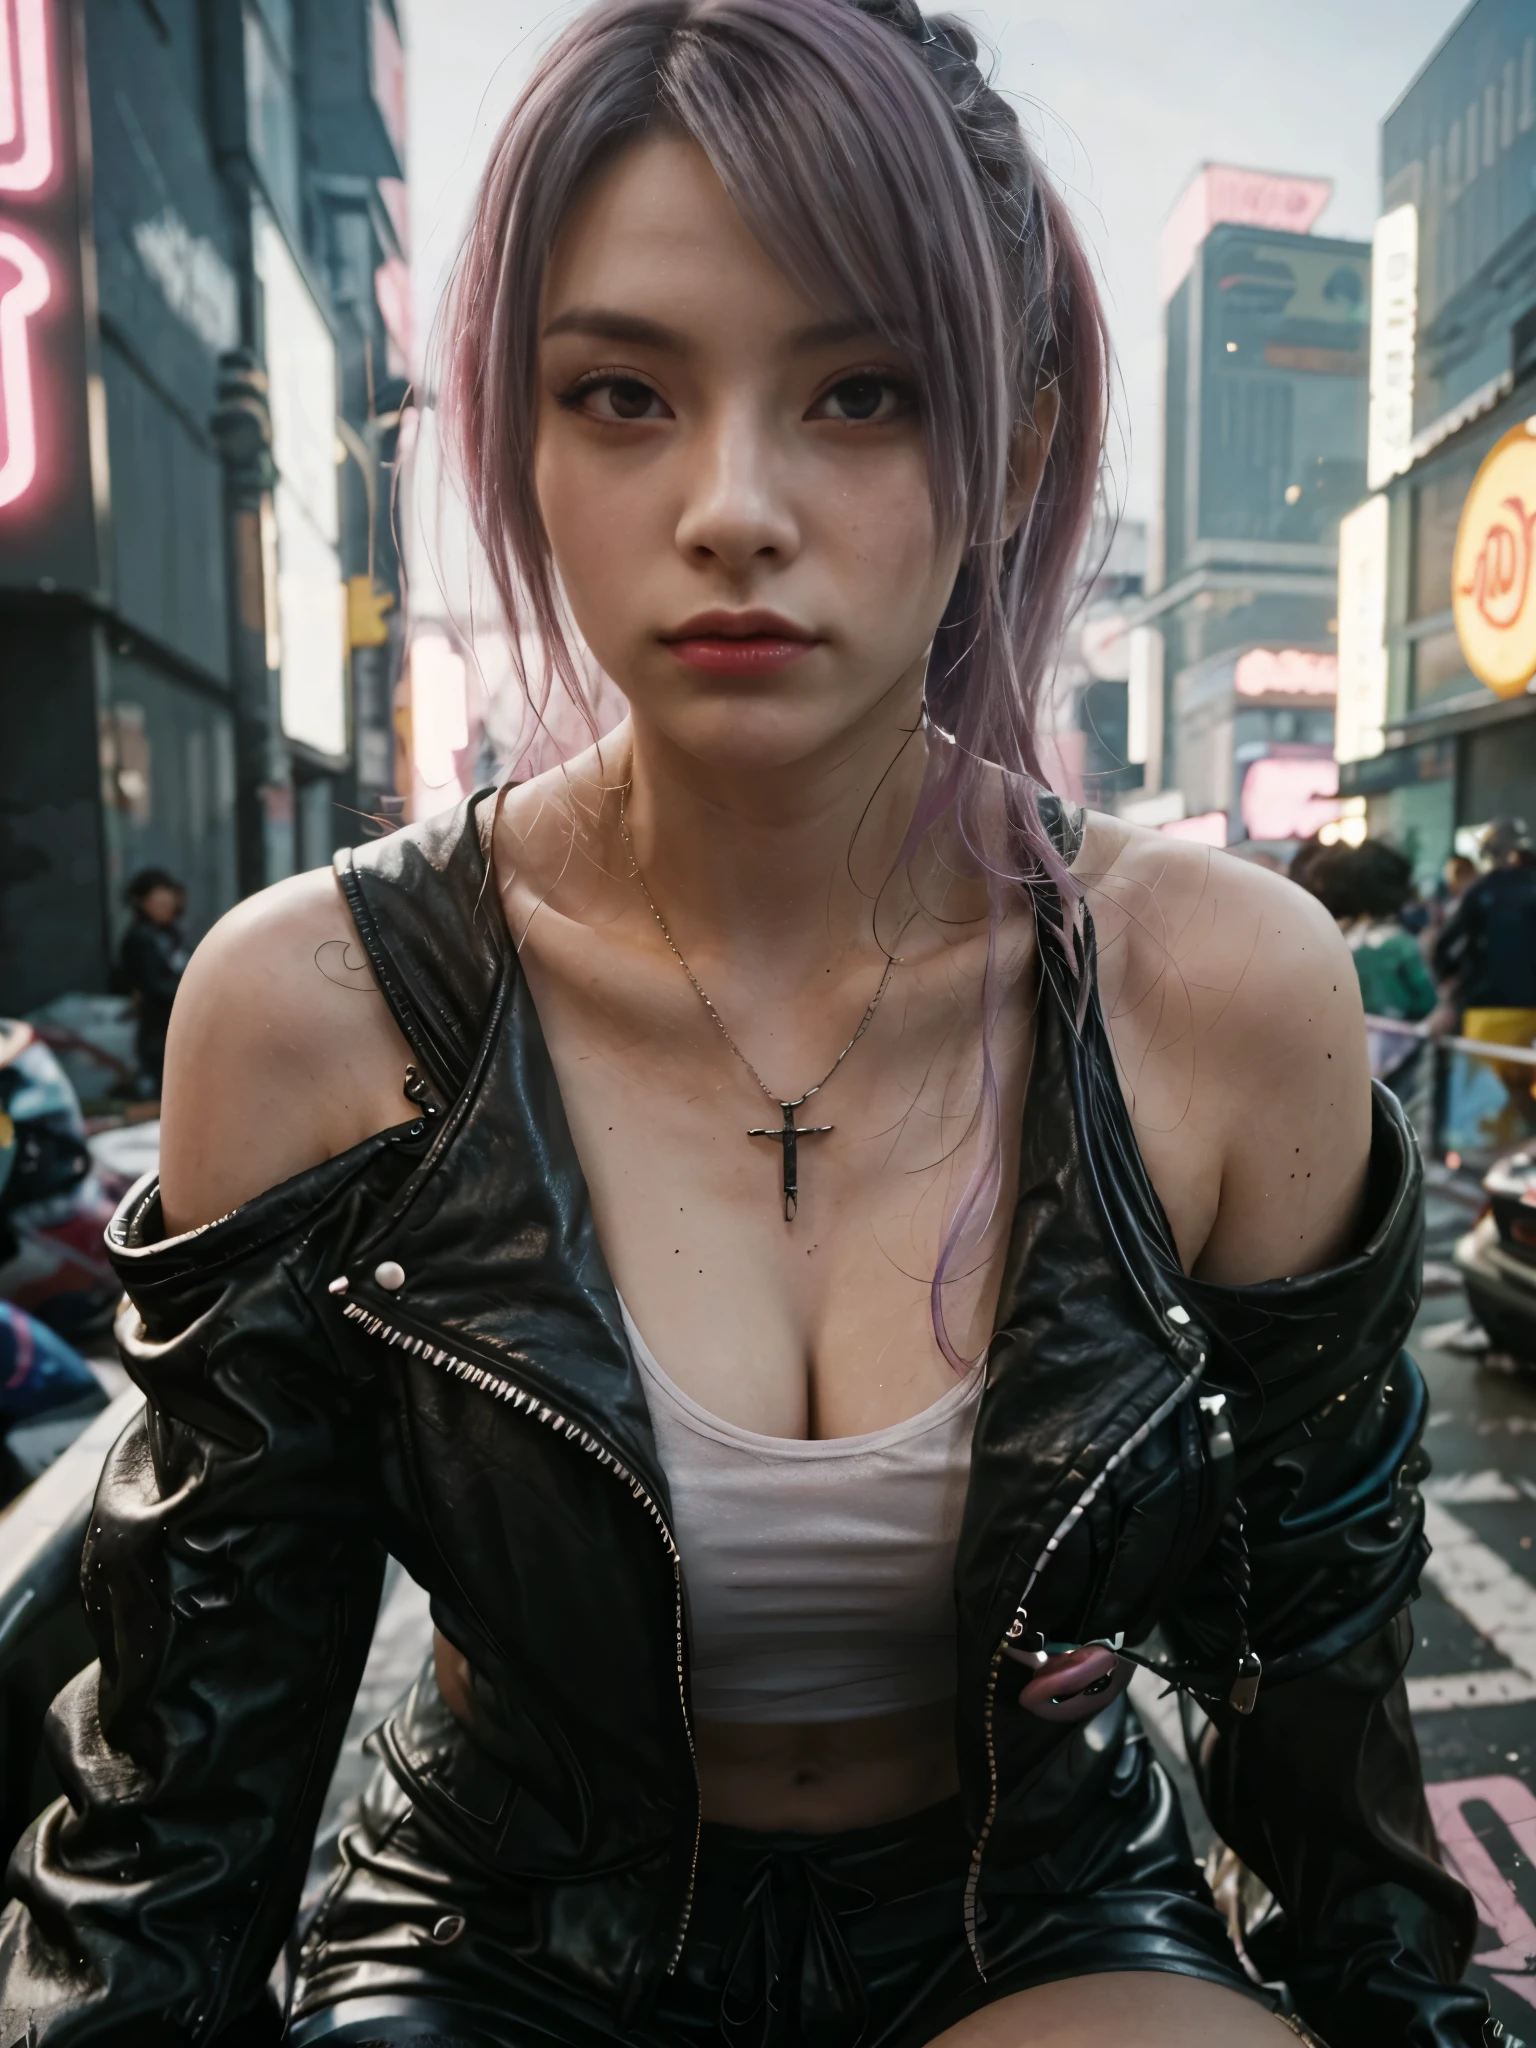 eine Frau in einer schulterfreien Lederjacke sitzt auf der Straße, cyberpunk art style, cyberpunk 2 0 y. o Modell Mädchen, hyper-realistic cyberpunk style, cyberpunk vibes, cyberpunk style ， hyperrealistisch, schönes Cyberpunk-Mädchen, cyberpunk art ultrarealistic 8k, cyberpunk girl, cyberpunk art, female cyberpunk anime girl, in cyberpunk style, cyberpunk judy alvarez